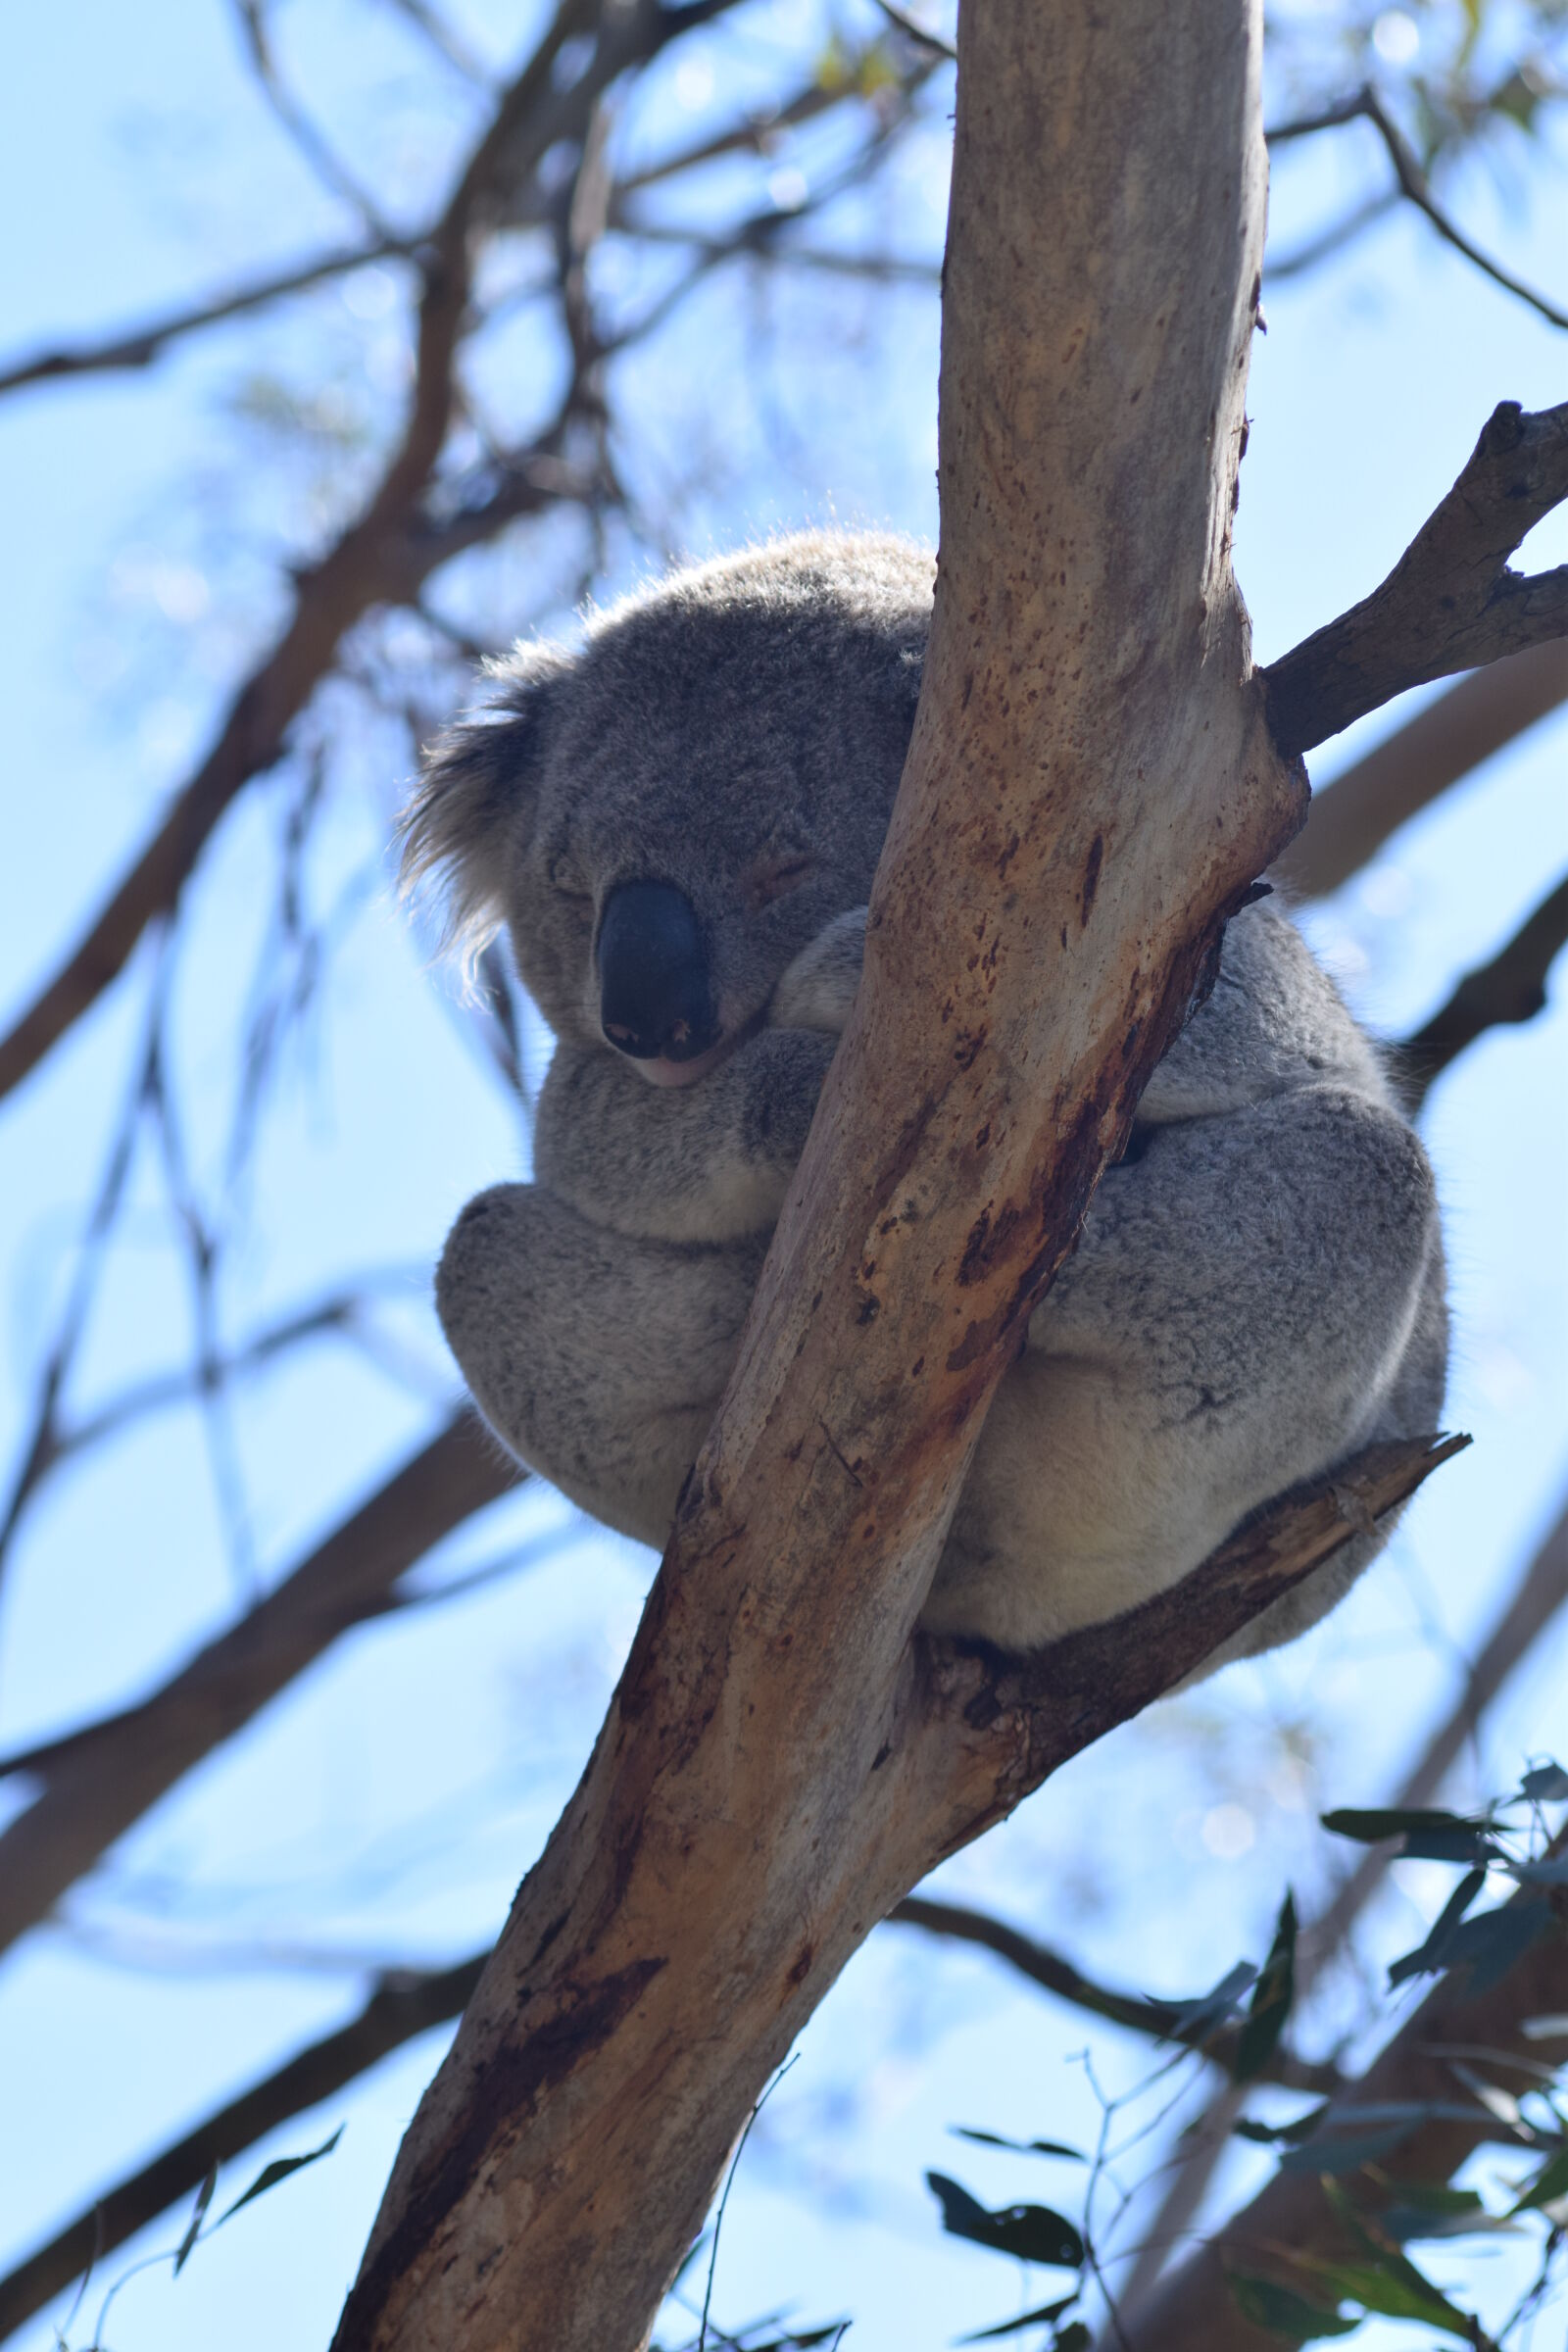 AF Nikkor 70-210mm f/4-5.6 sample photo. Koala photography